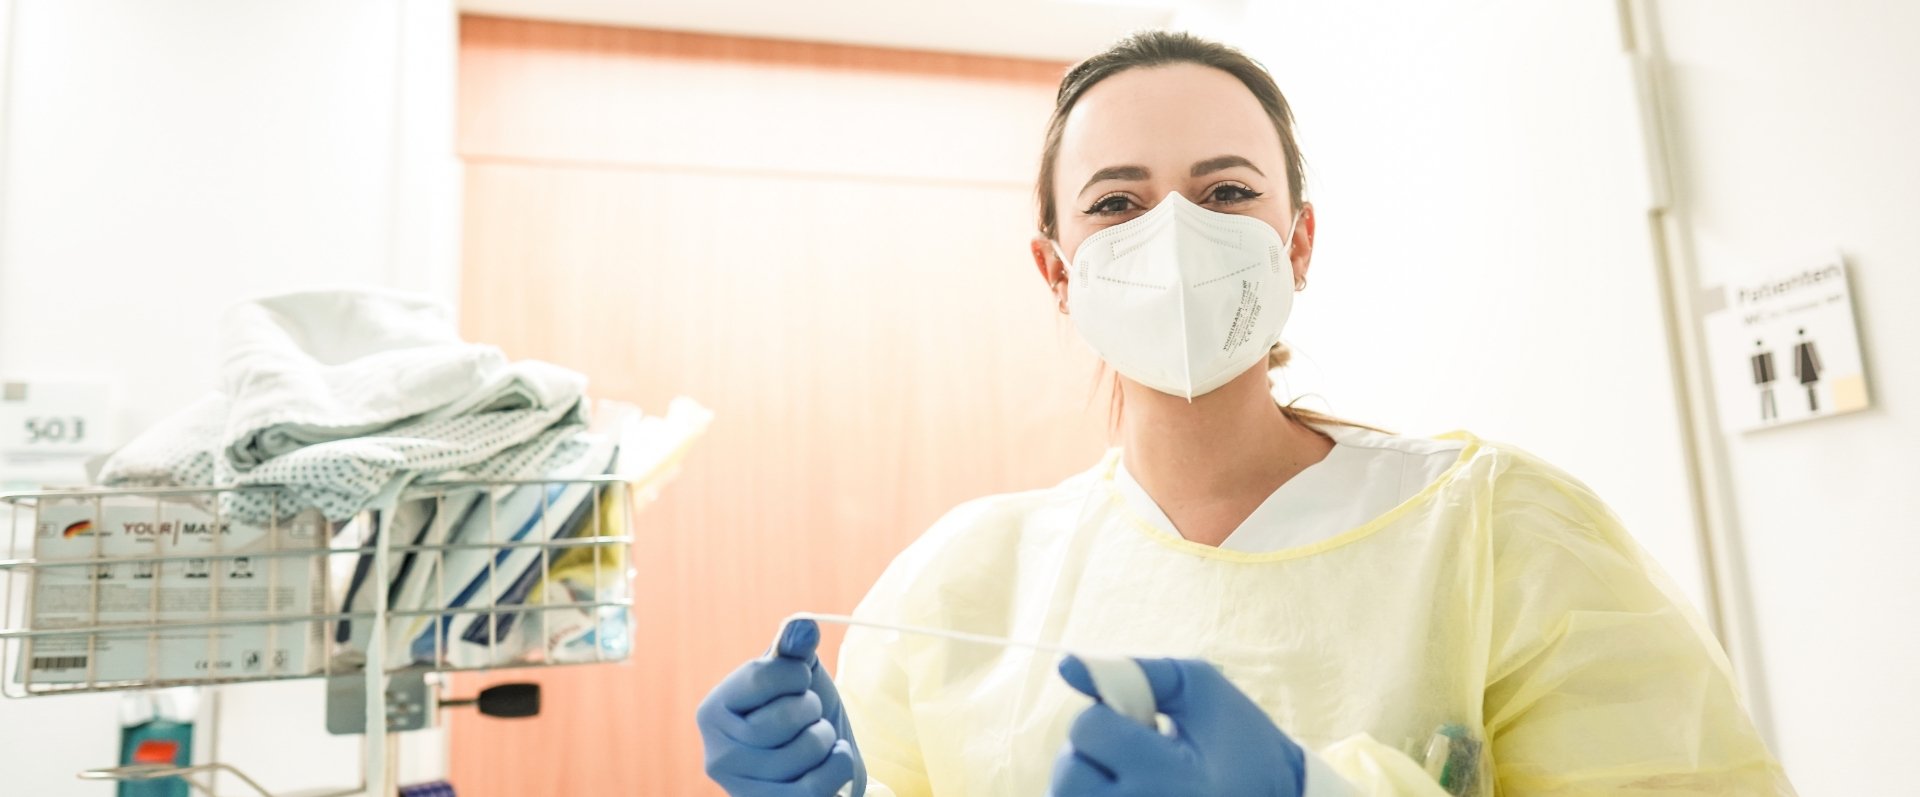 Ärztin mit Maske und Handschuhe im Krankenhausflur